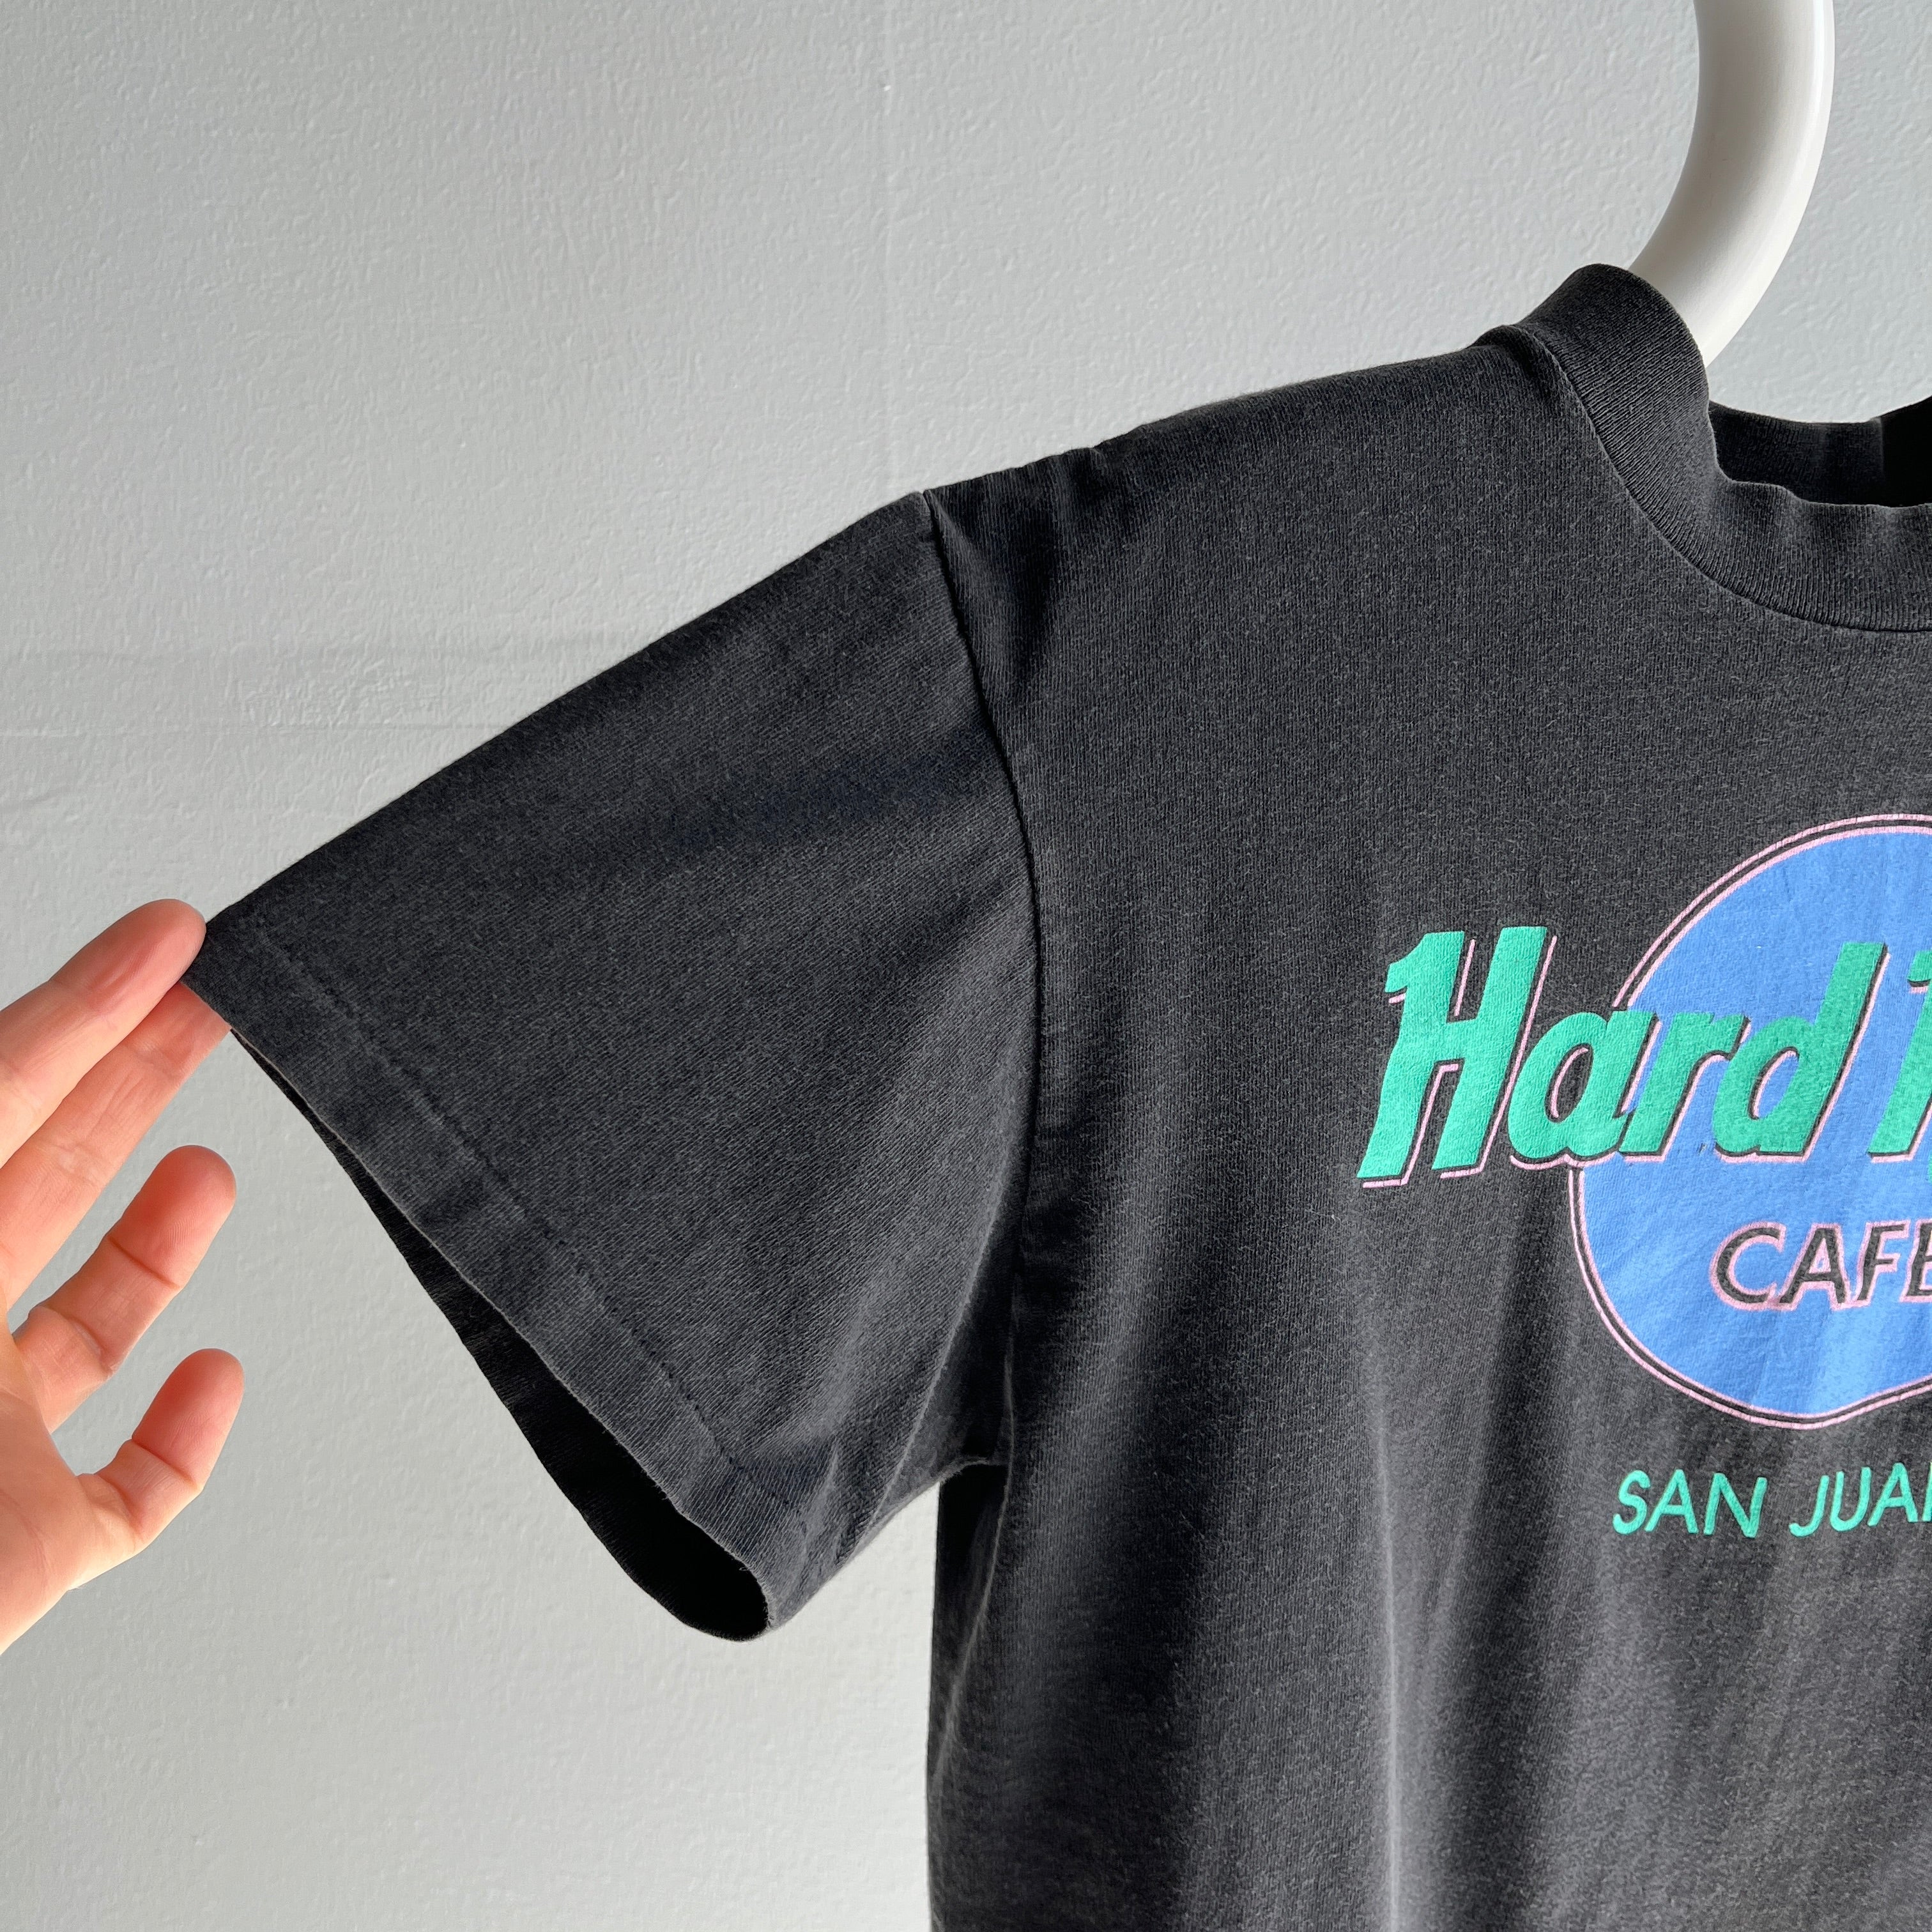 1980/90s San Juan Hard Rock Cafe Cotton T-Shirt